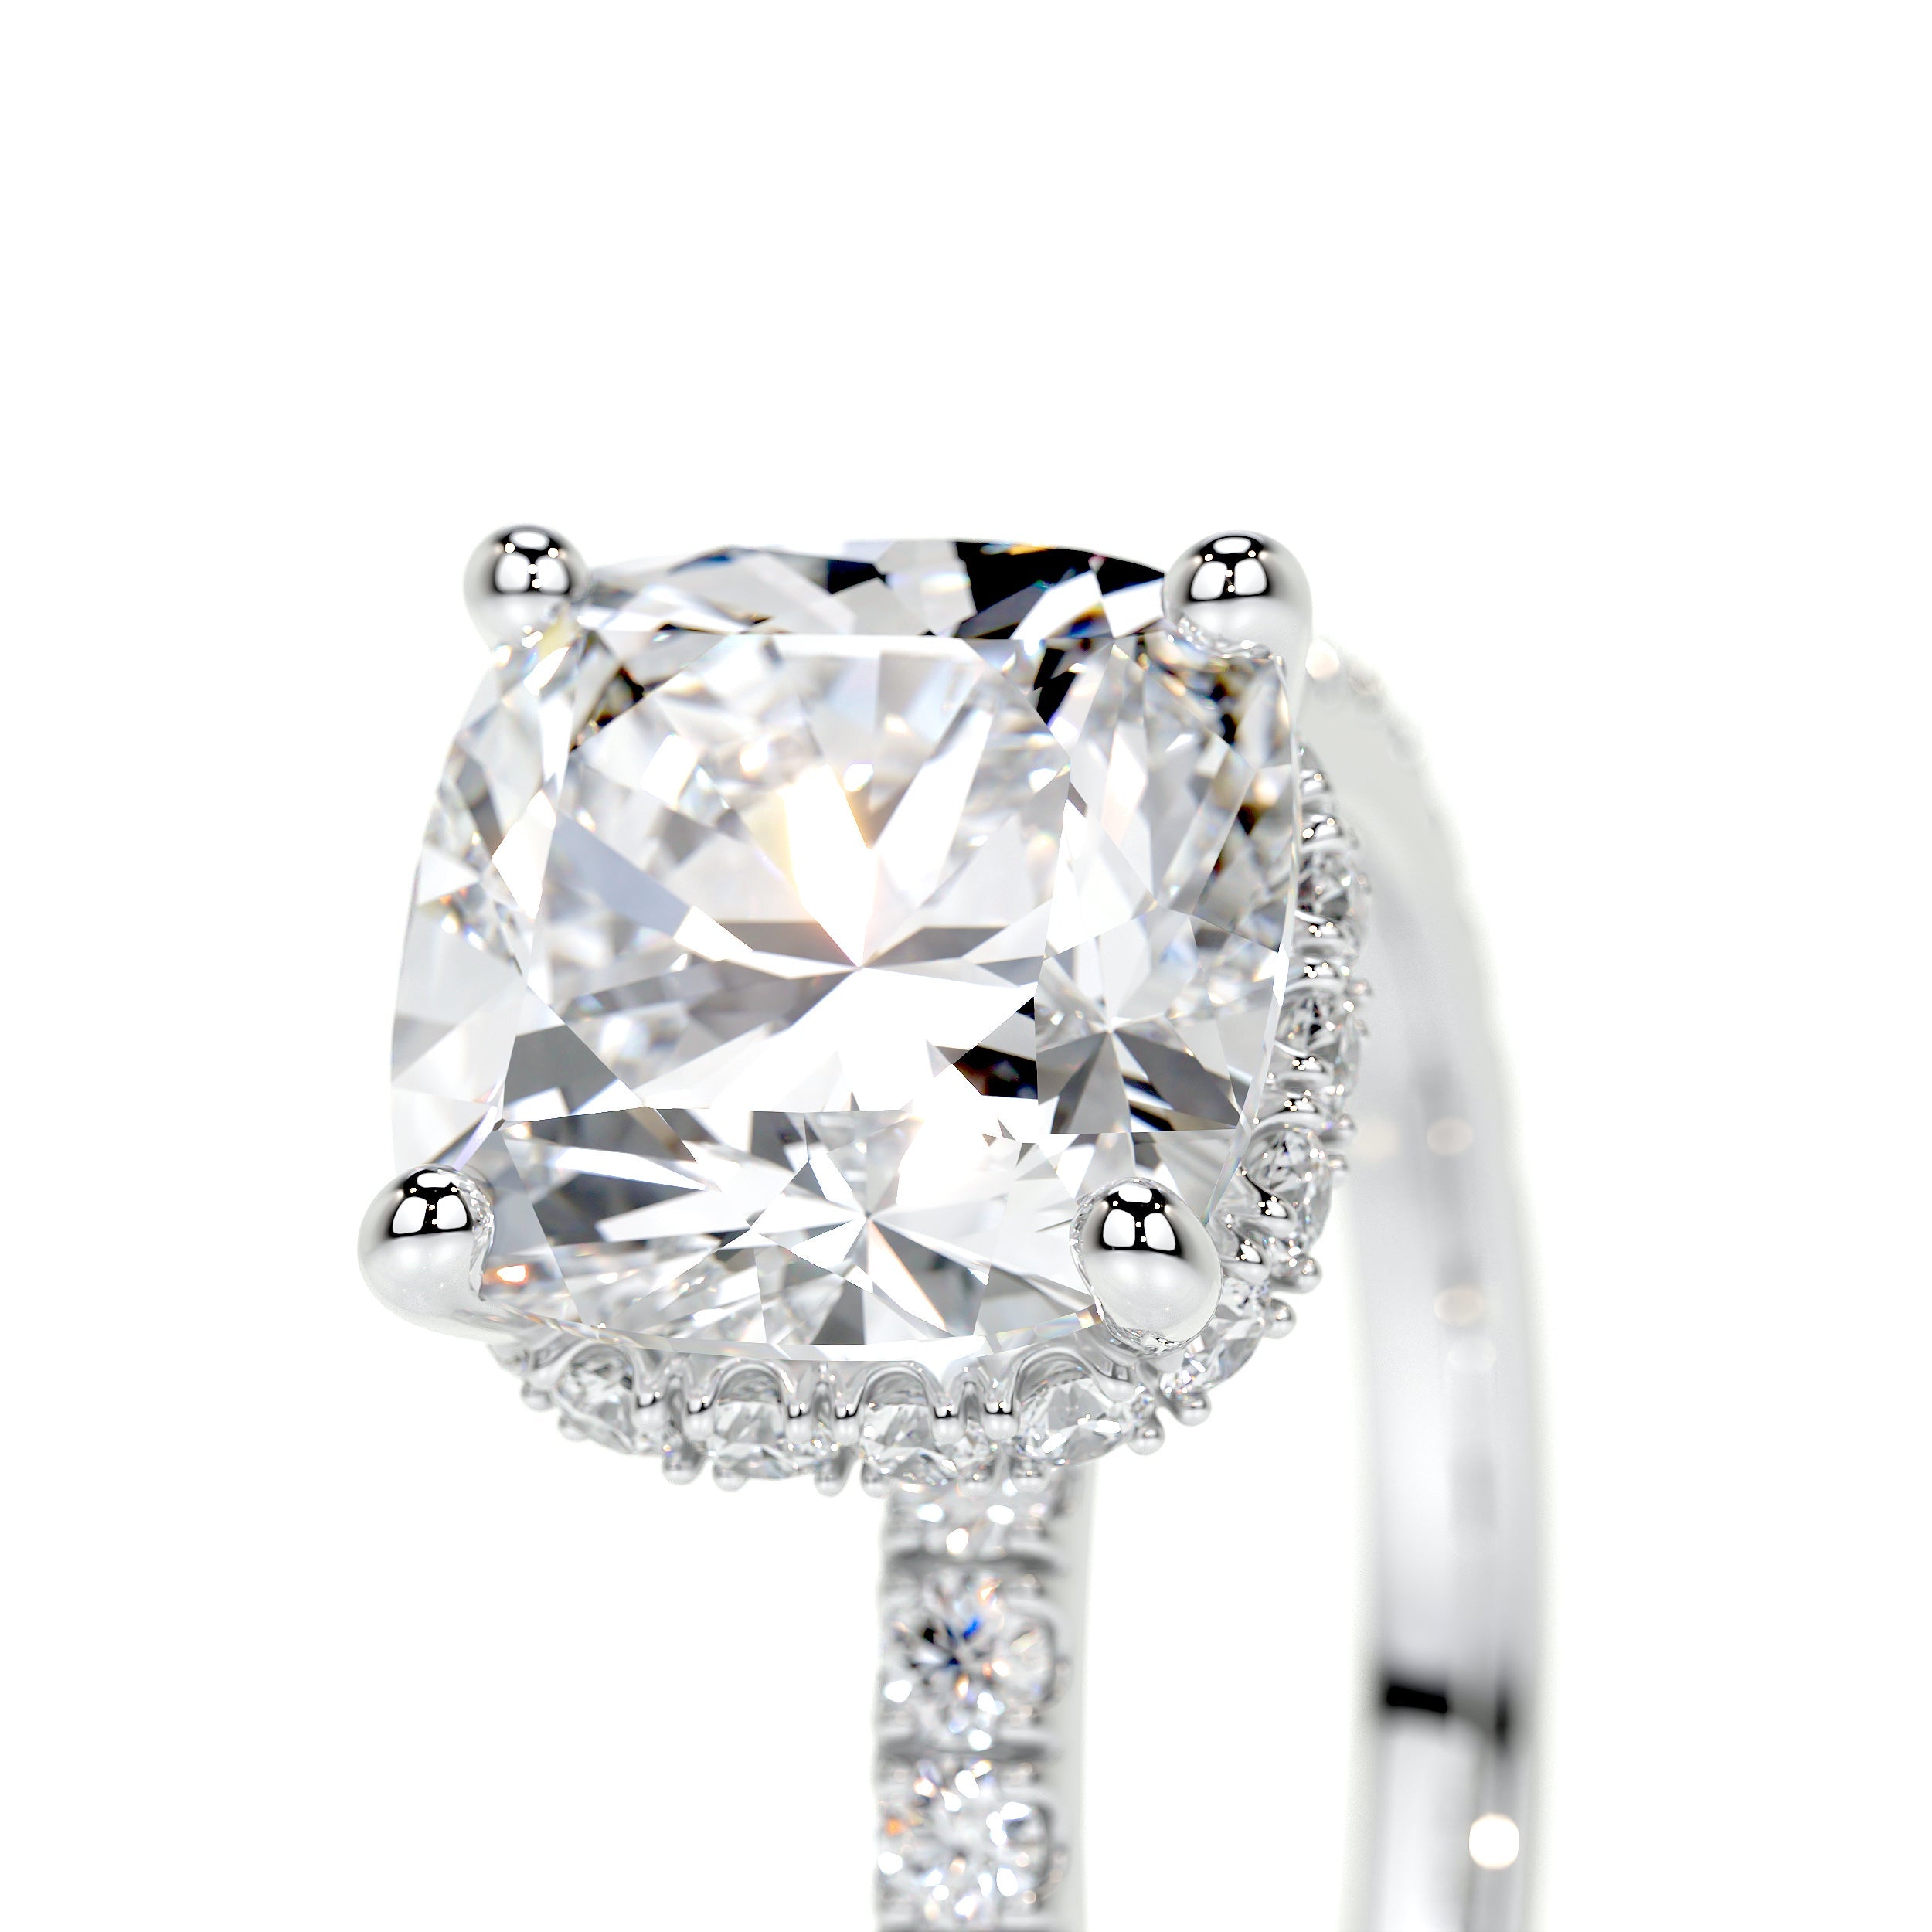 Madeline Lab Grown Diamond Ring   (2.5 Carat) -18K White Gold